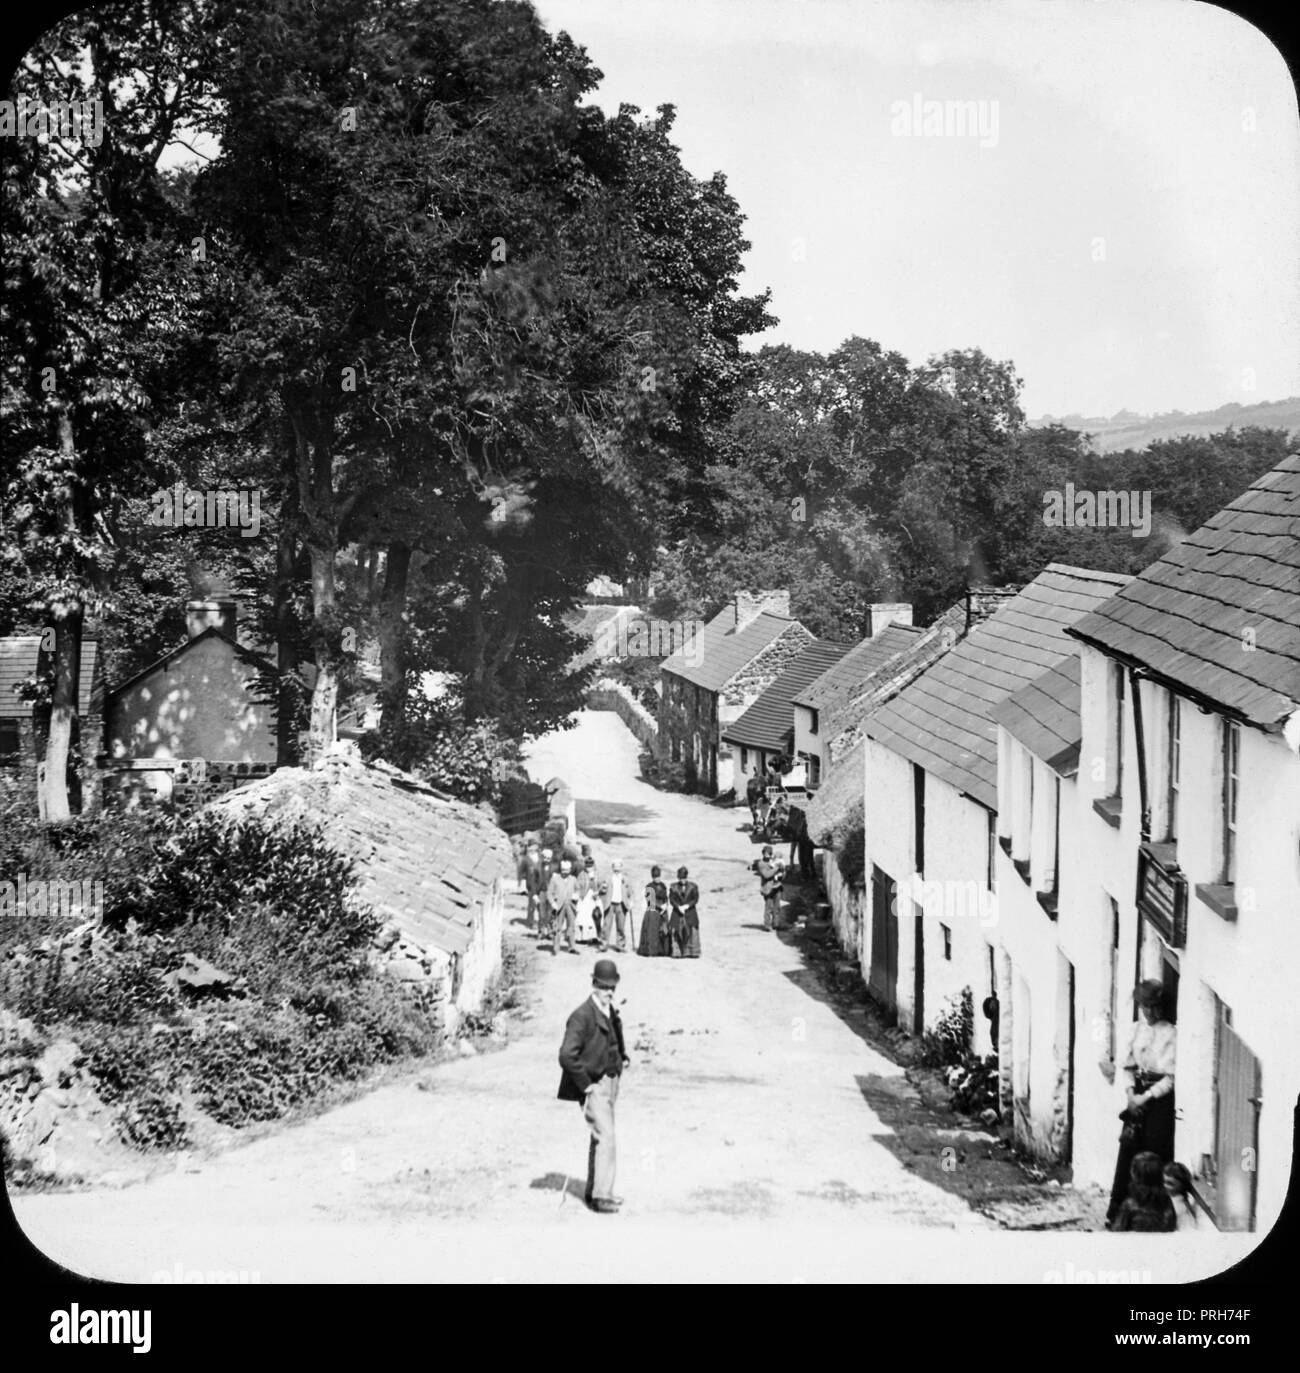 Molto presto ventesimo secolo fotografia che mostra il villaggio o frazione di Glenoe nella contea di Antrim in Irlanda del Nord. Mostra un certo numero di persone per le strade e le righe di cottages e case. Foto Stock